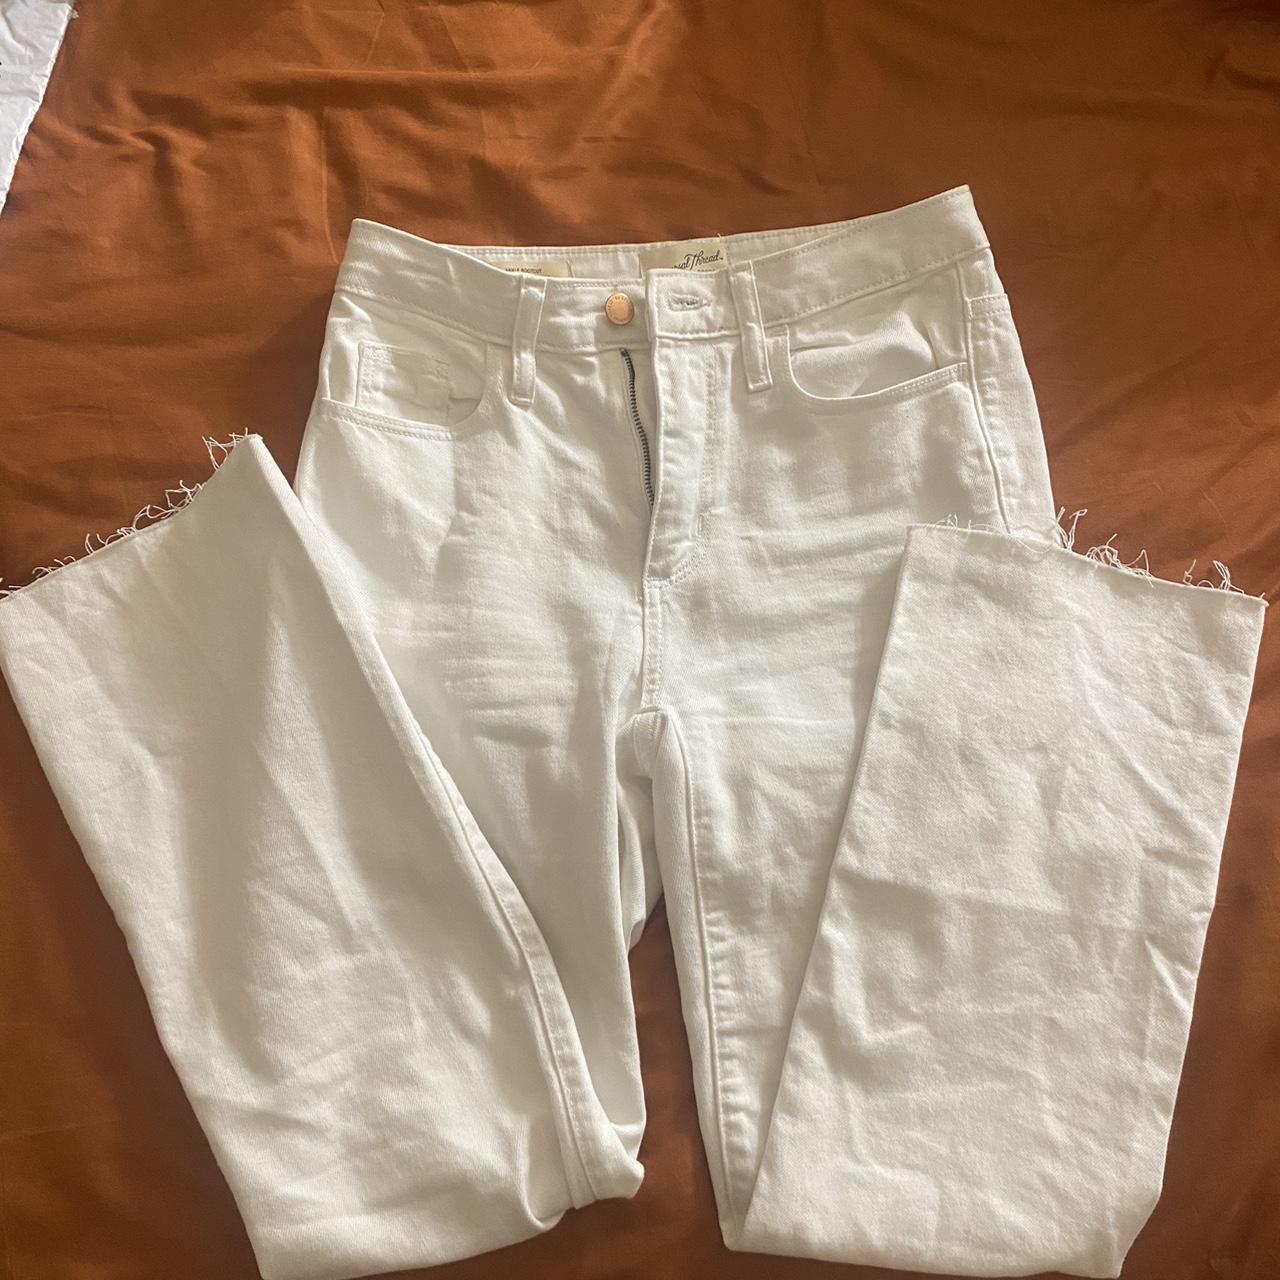 White straight leg jeans - Depop